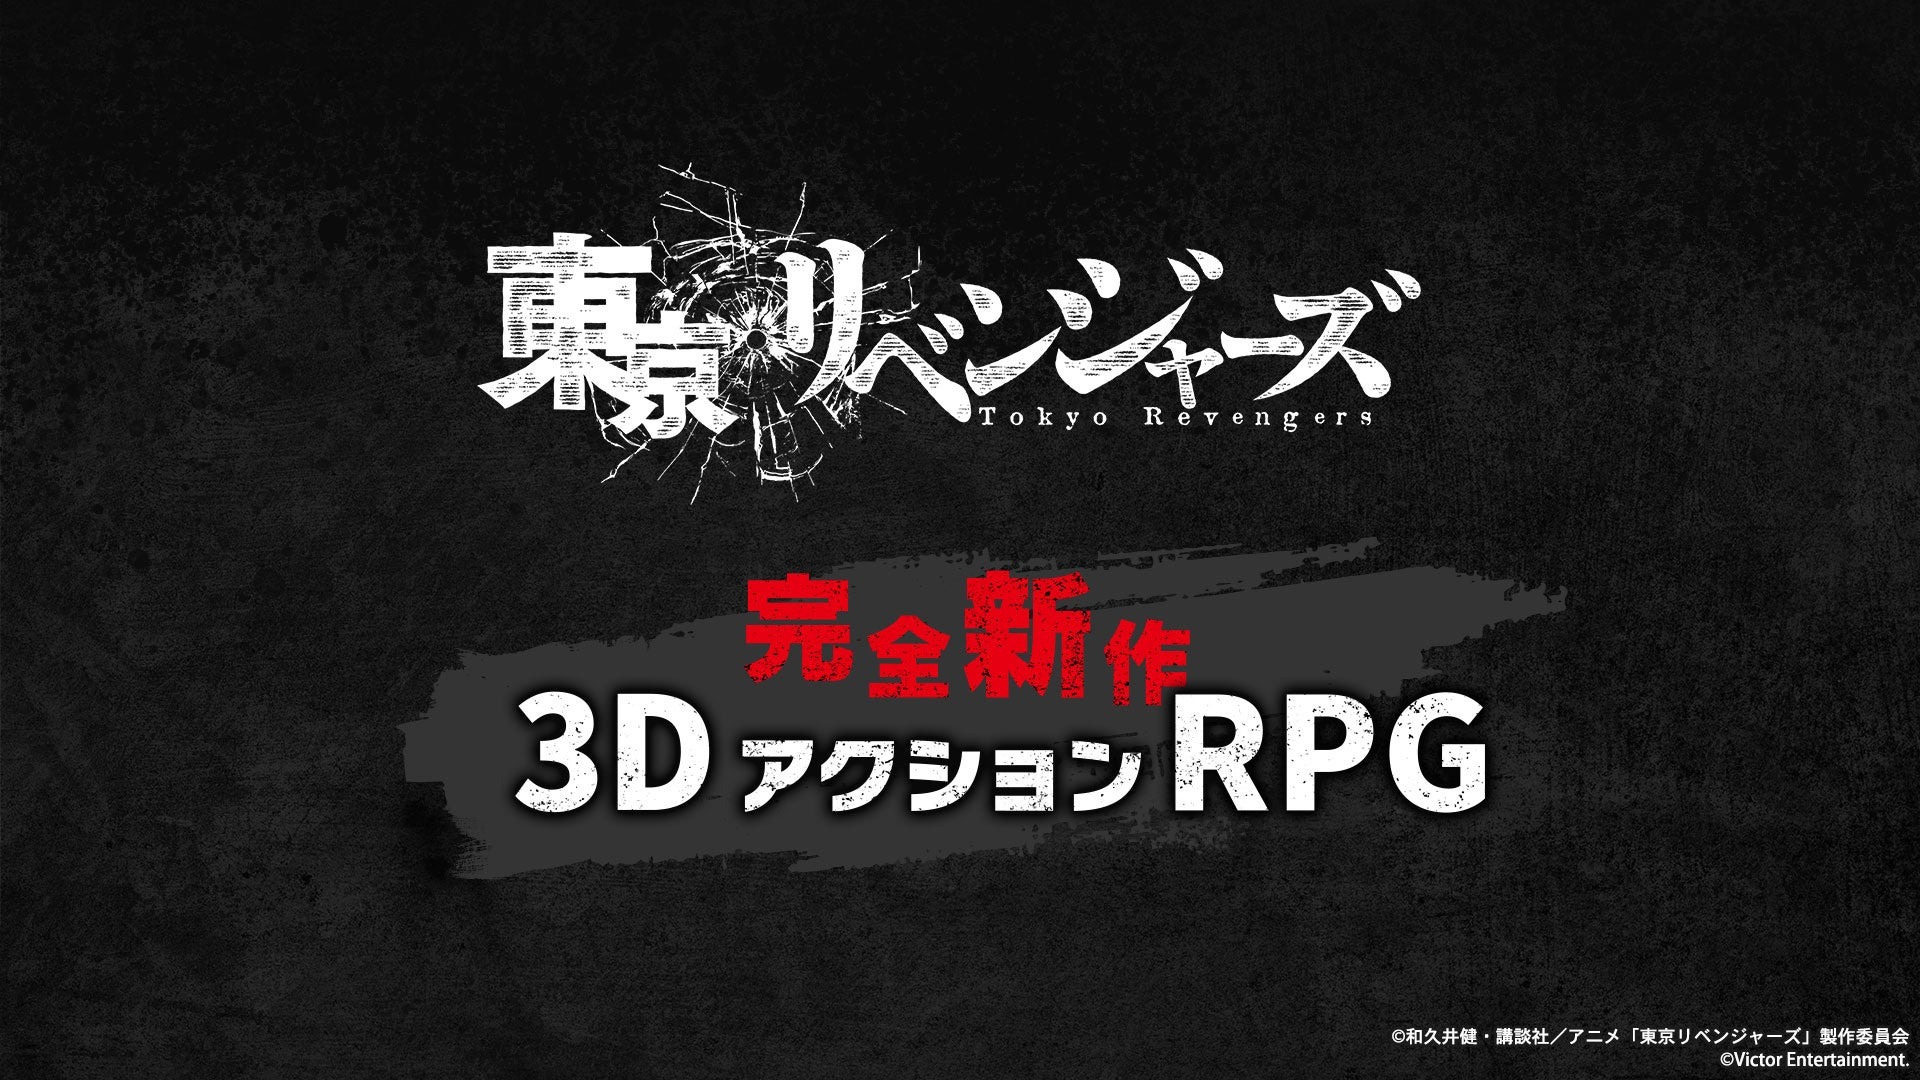 #Tokyo Revengers Action-RPG für Konsolen, Mobilgeräte und PC enthüllt